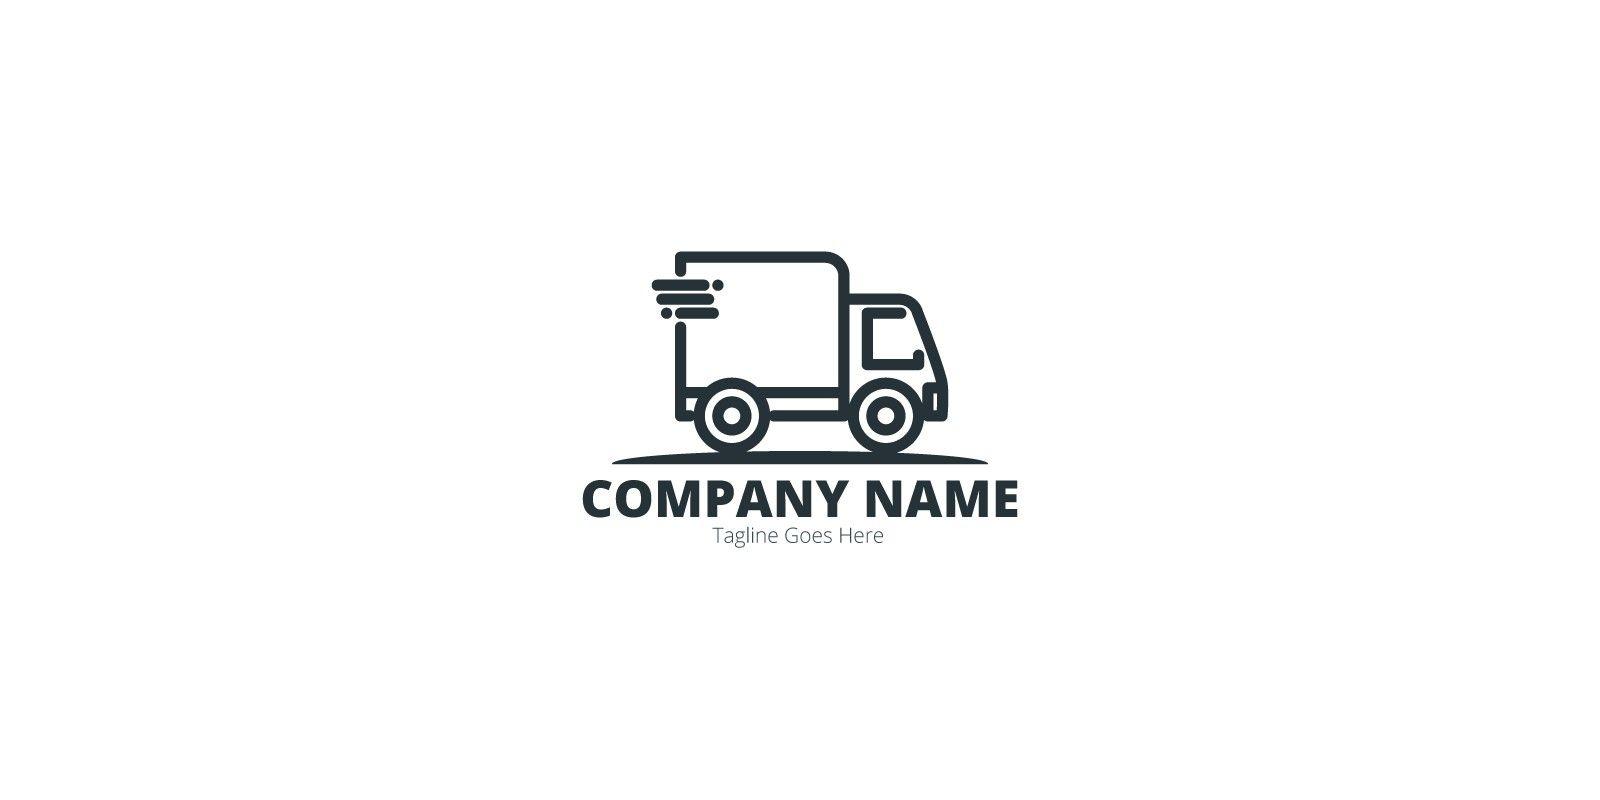 Truclk Logo - Truck Logo | Codester